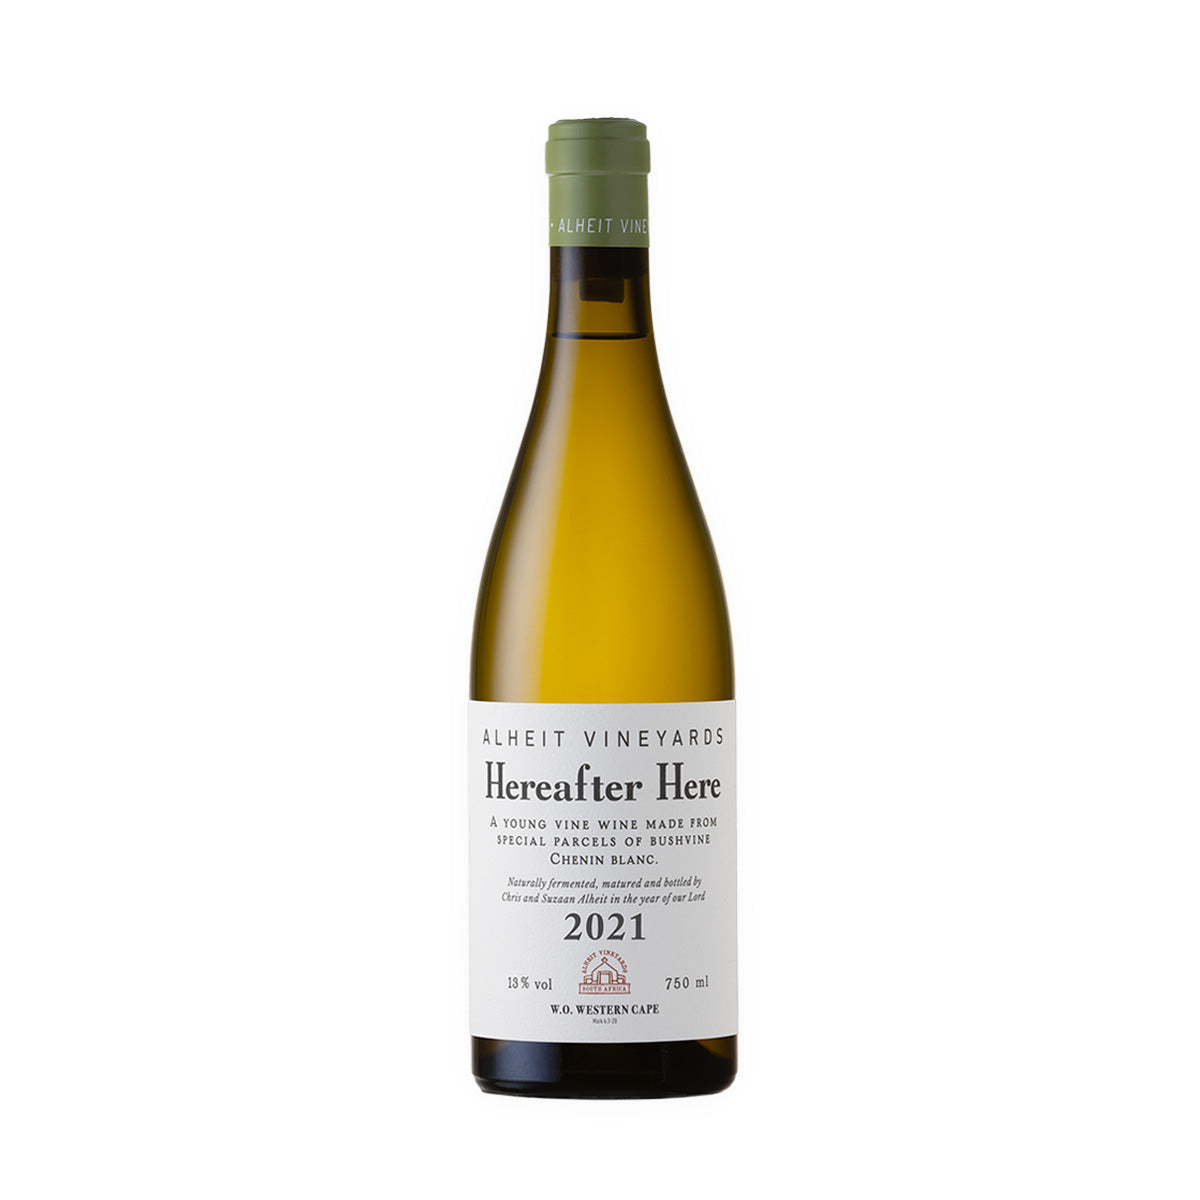 Alheit Vineyards 'Hereafter Here' Chenin Blanc 2021